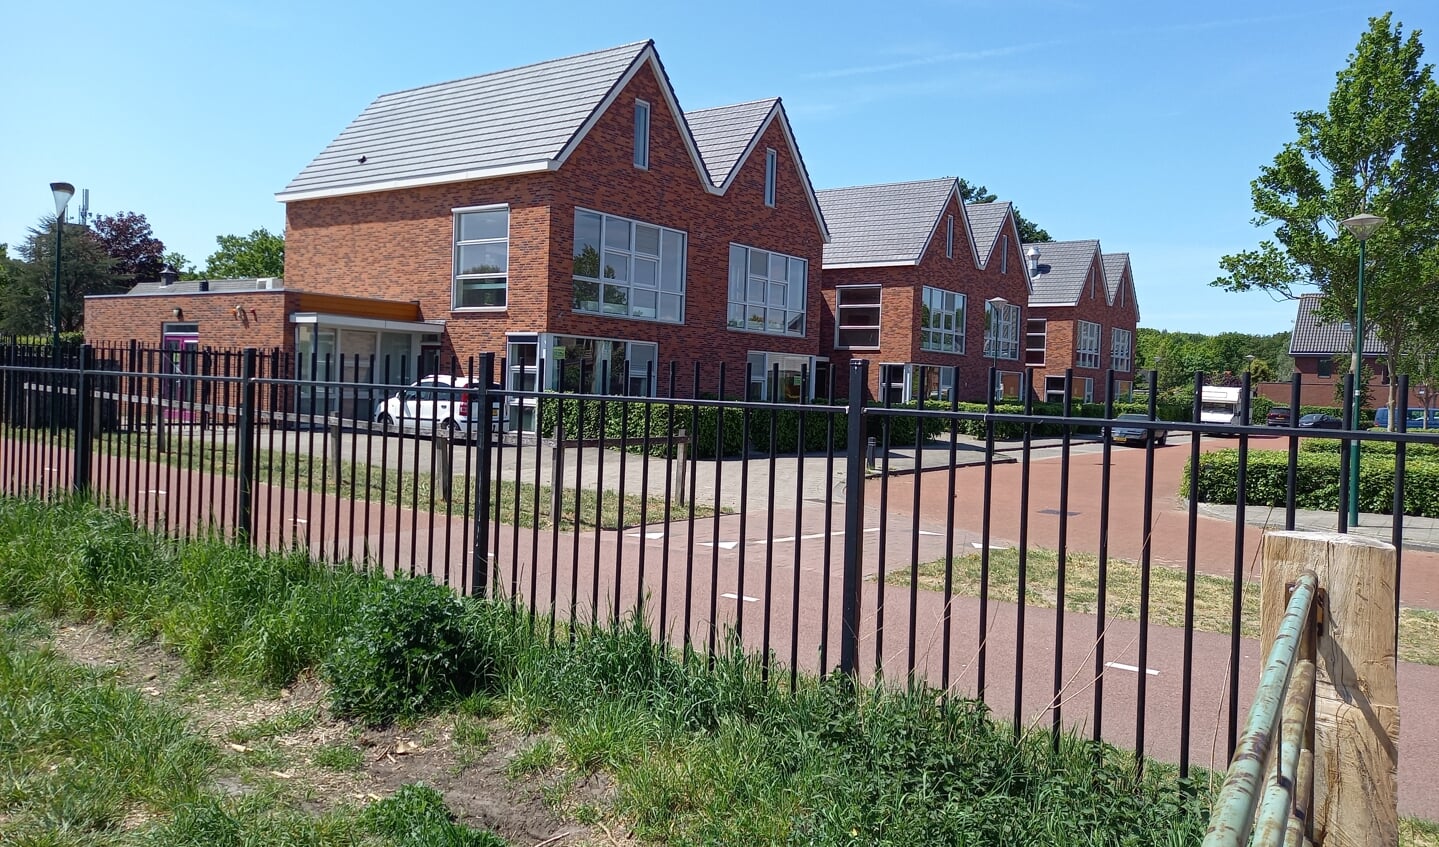 Het moestuintjescomplex bevindt zich tegenover de veelbesproken voormalige schoolwoningen aan de Mispel, eveneens op grondgebied van Rhenen. Ze zijn verkocht en worden omgebouwd tot appartementen.